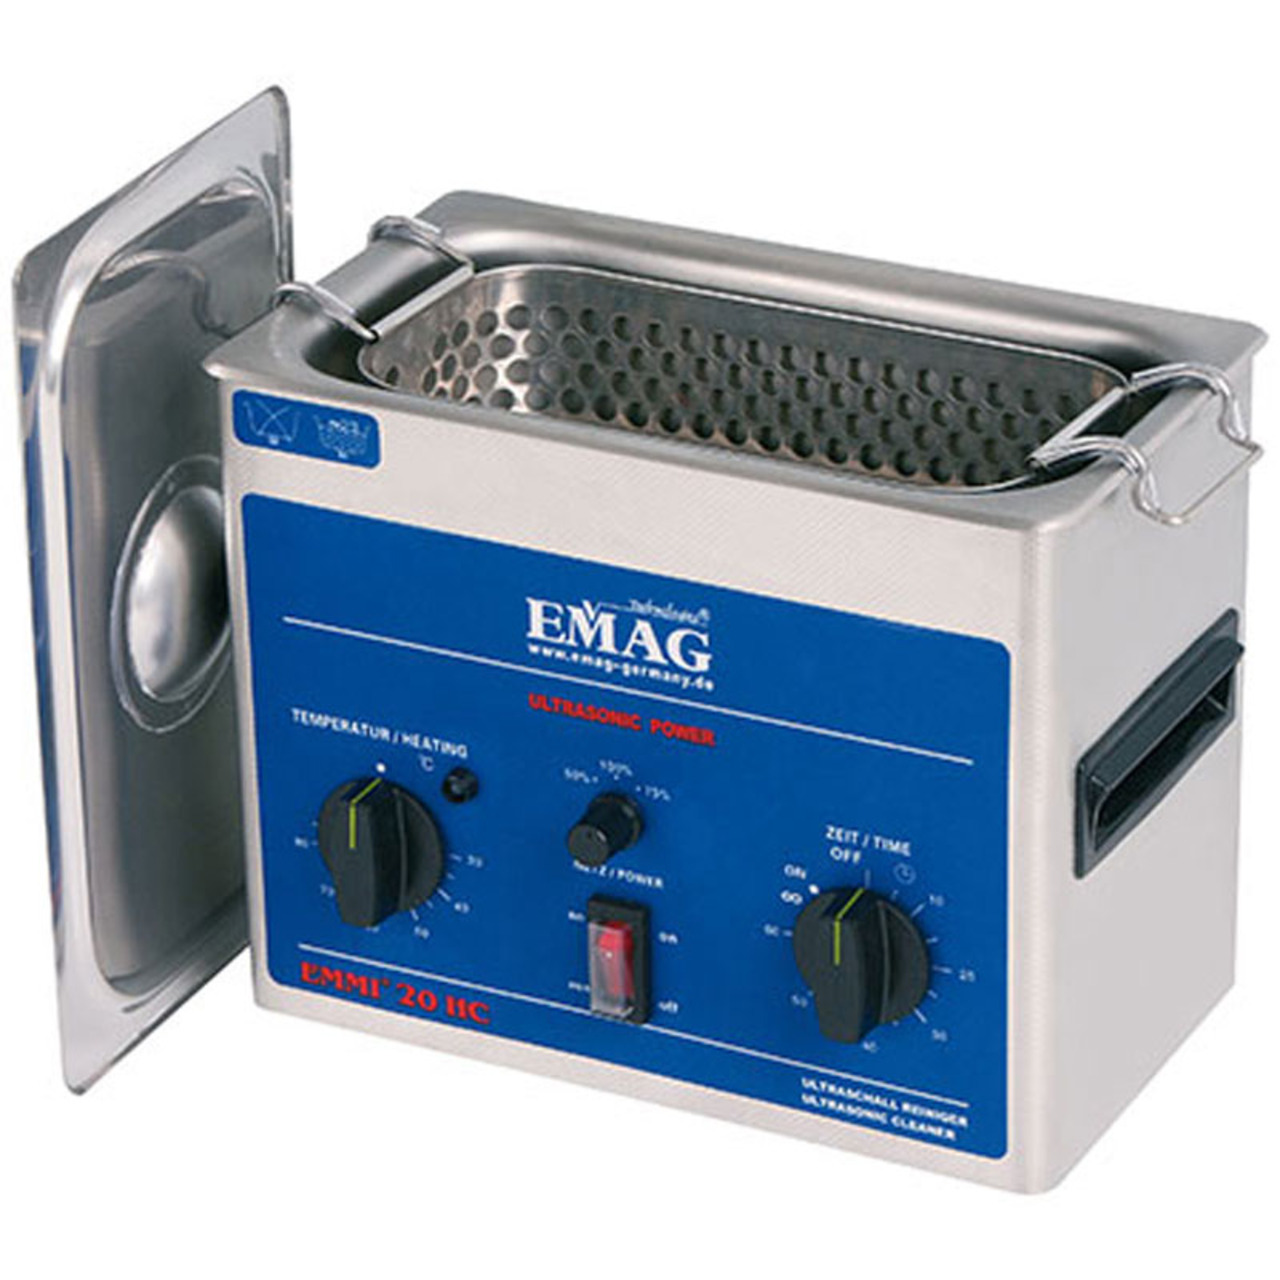 EMAG UltraschallreinigerEmmi-20 HC- 2-0 L- mit Universalreiniger EM-080